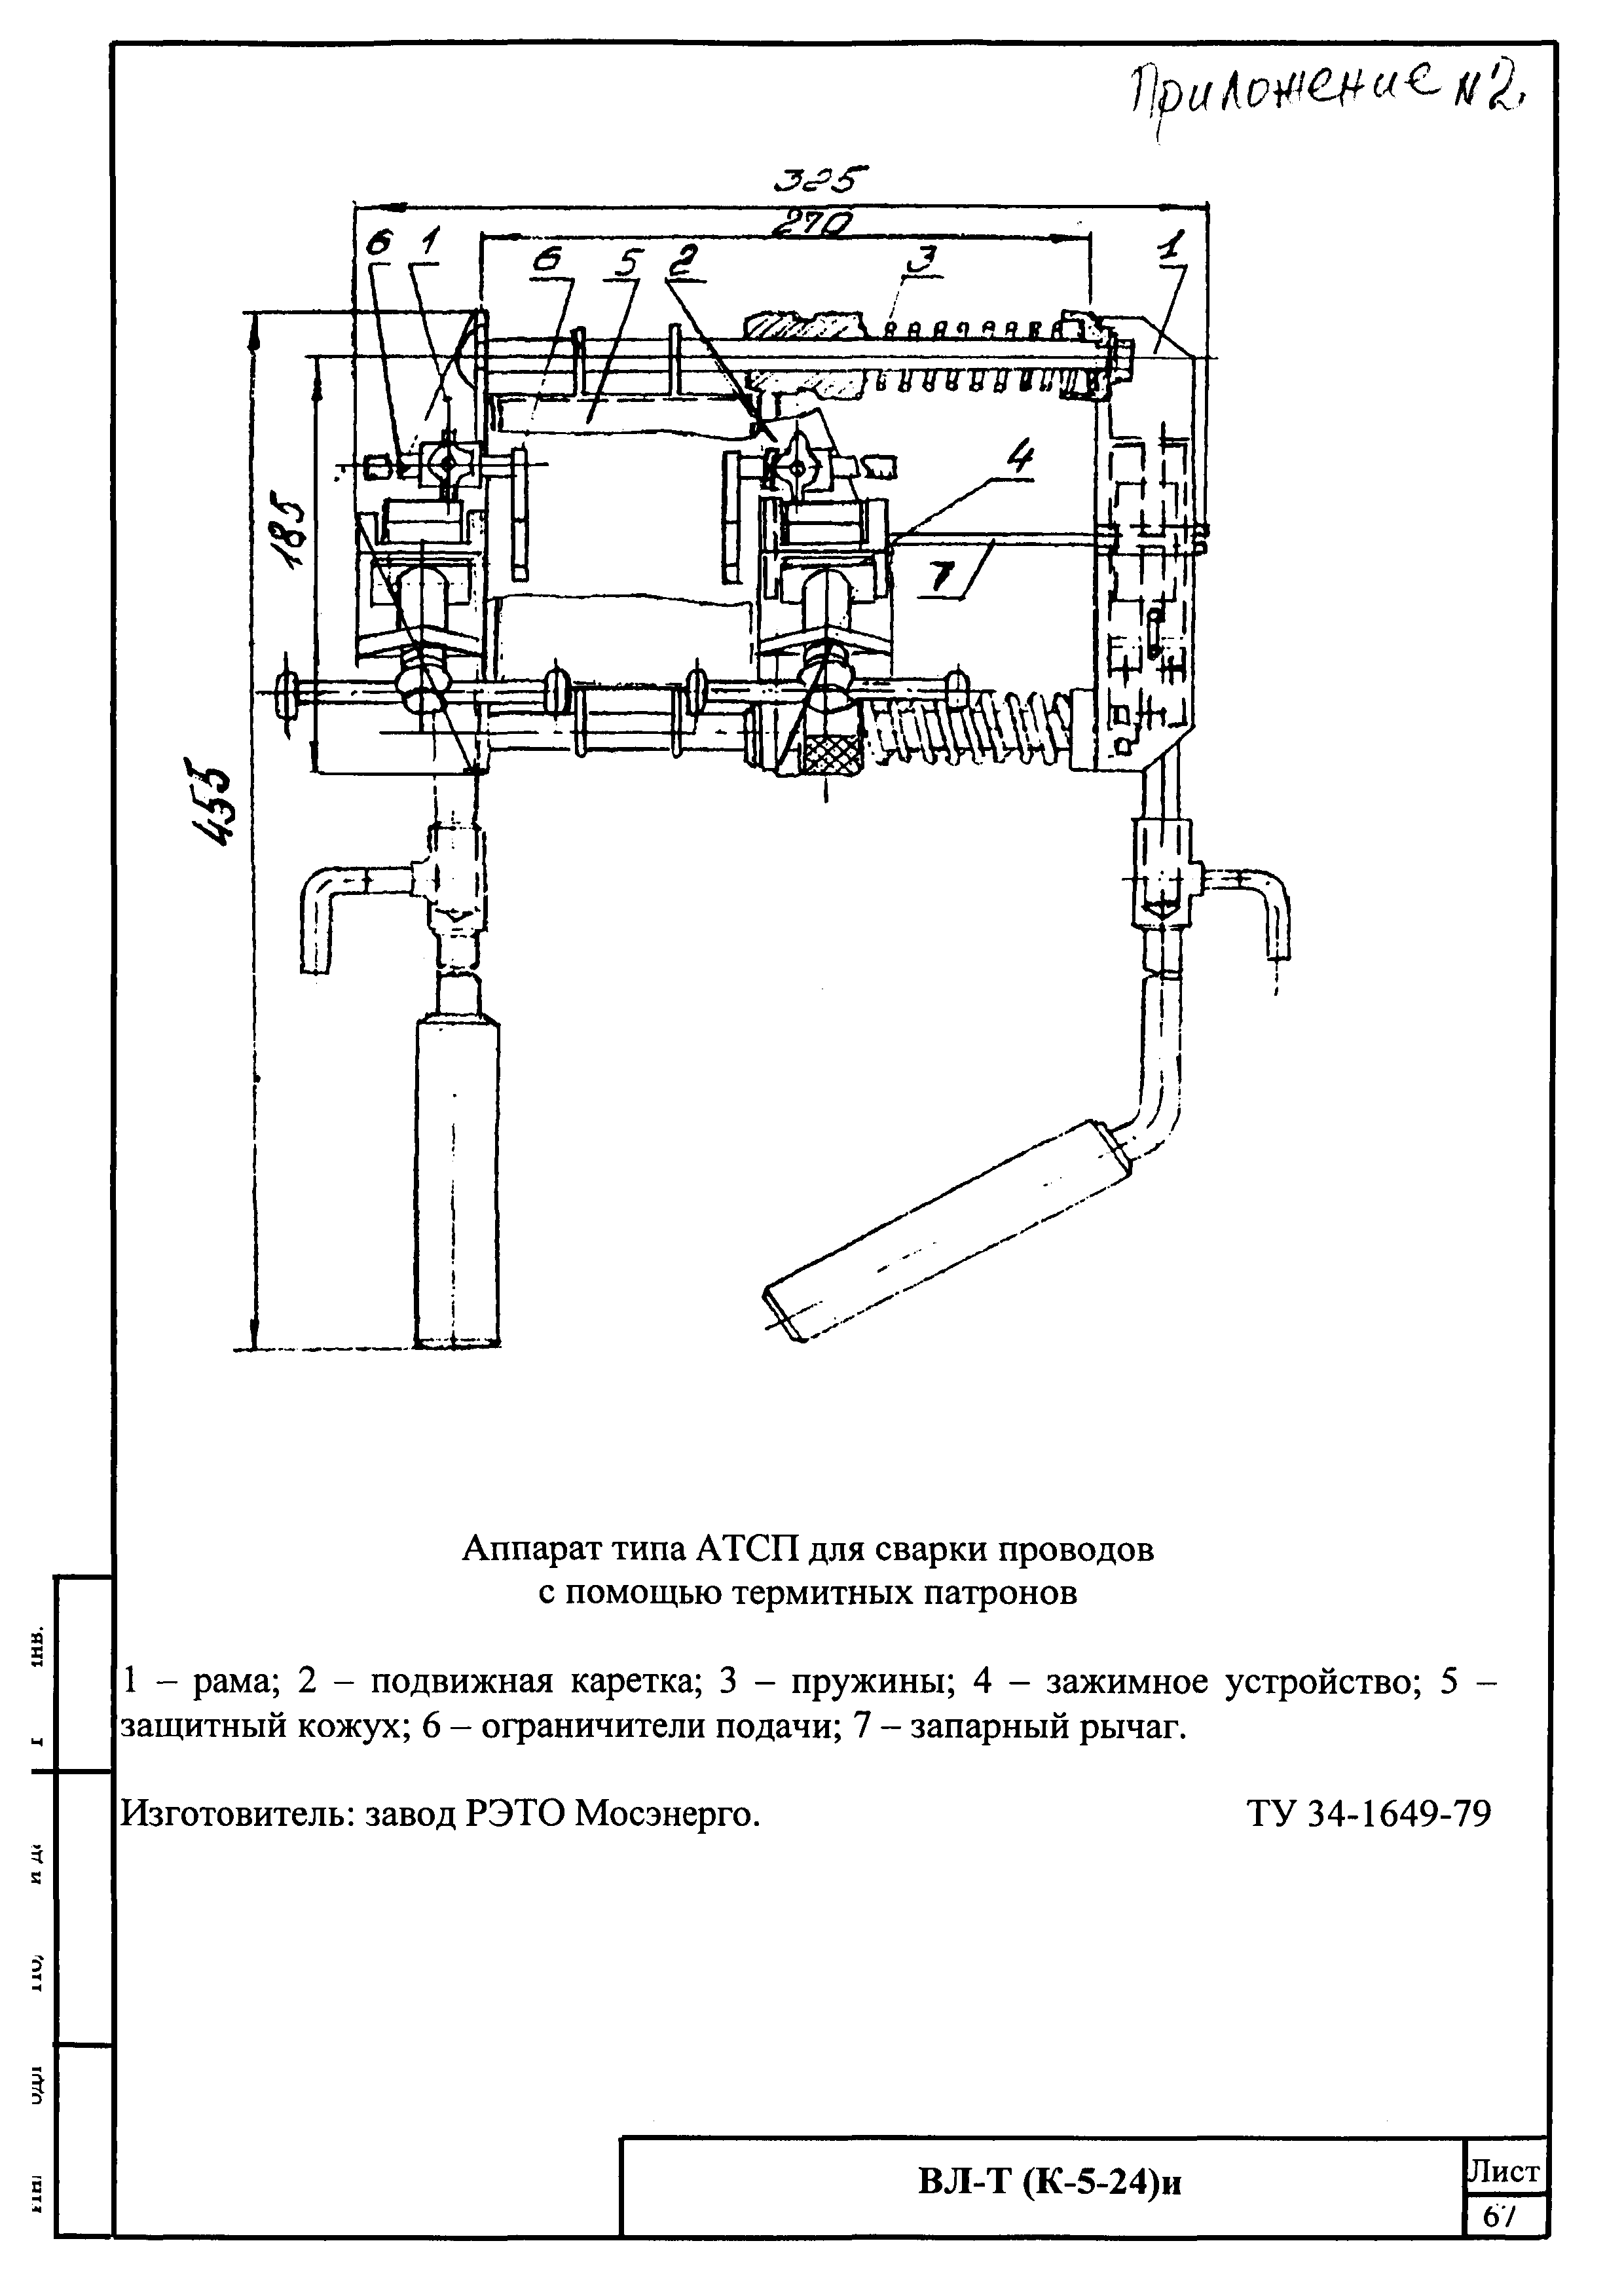 Технологическая карта К-5-24-2и